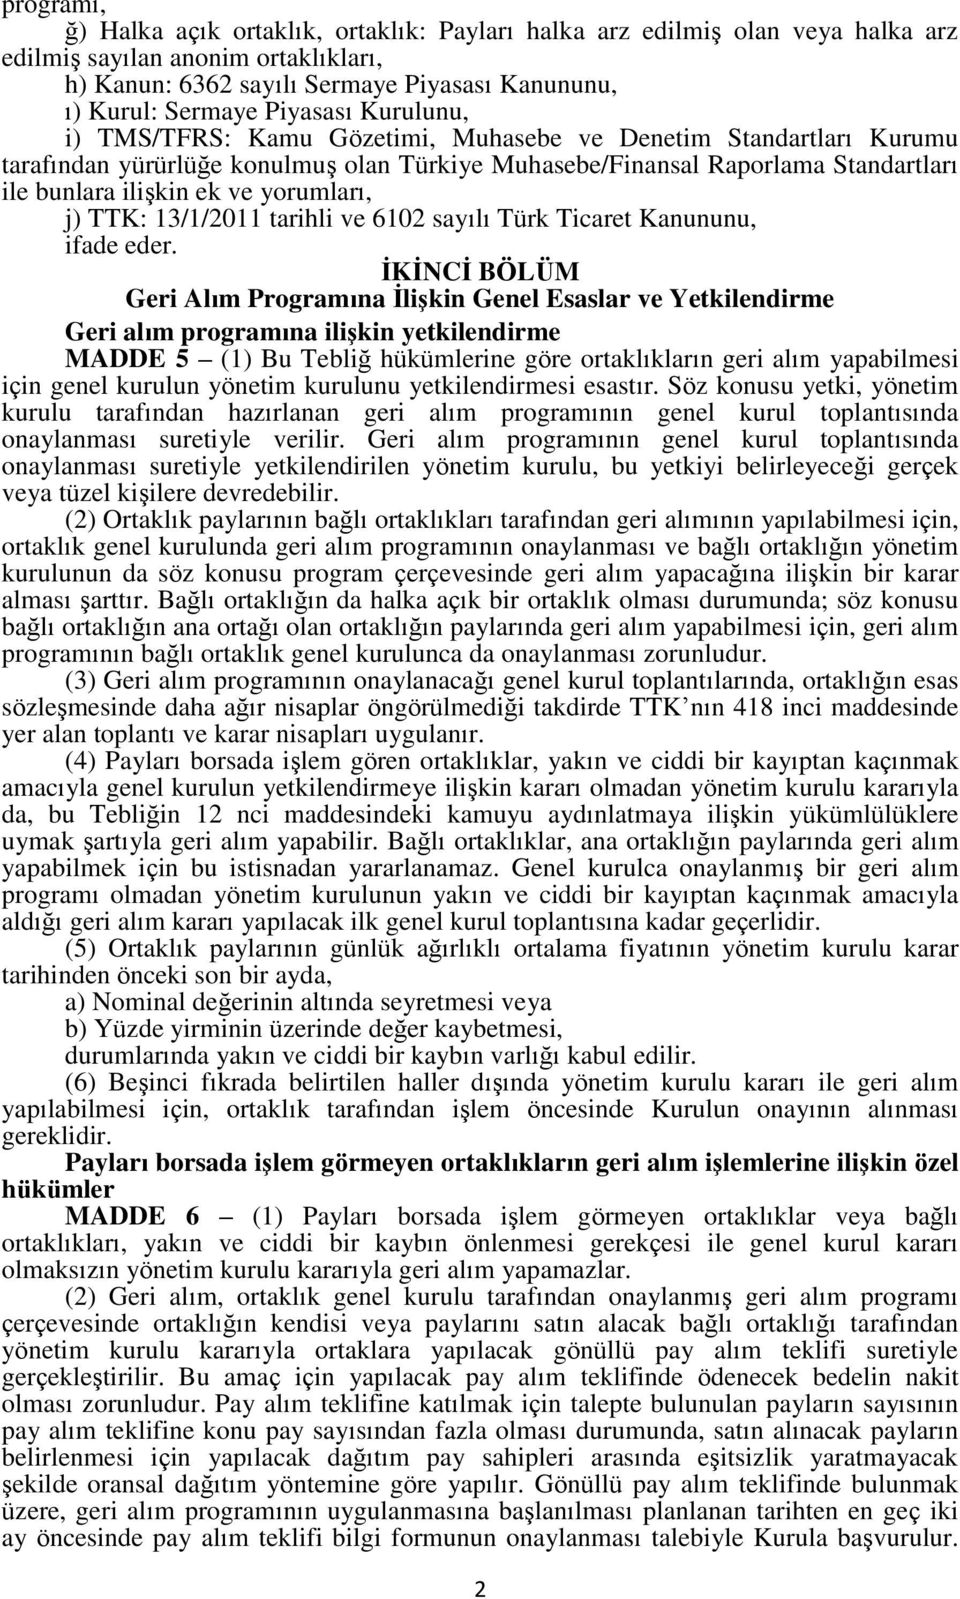 yorumları, j) TTK: 13/1/2011 tarihli ve 6102 sayılı Türk Ticaret Kanununu, ifade eder.